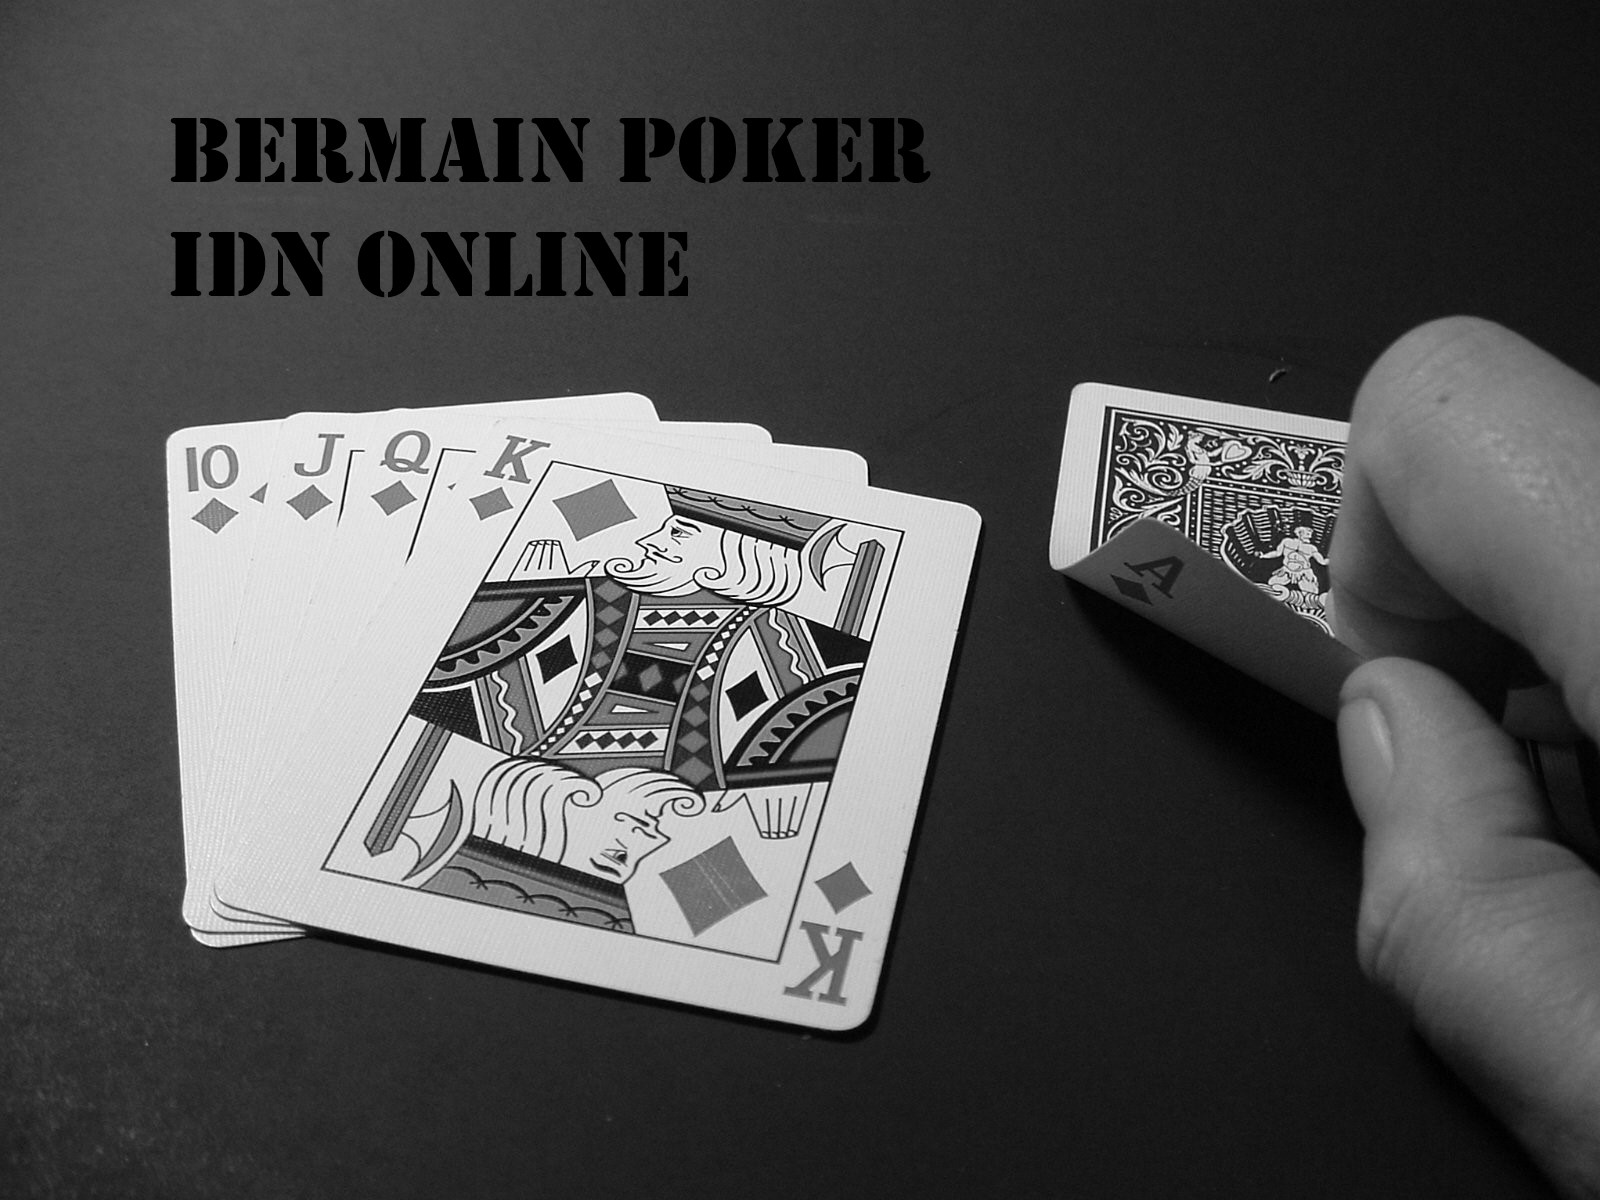 Bermain Poker IDN Online